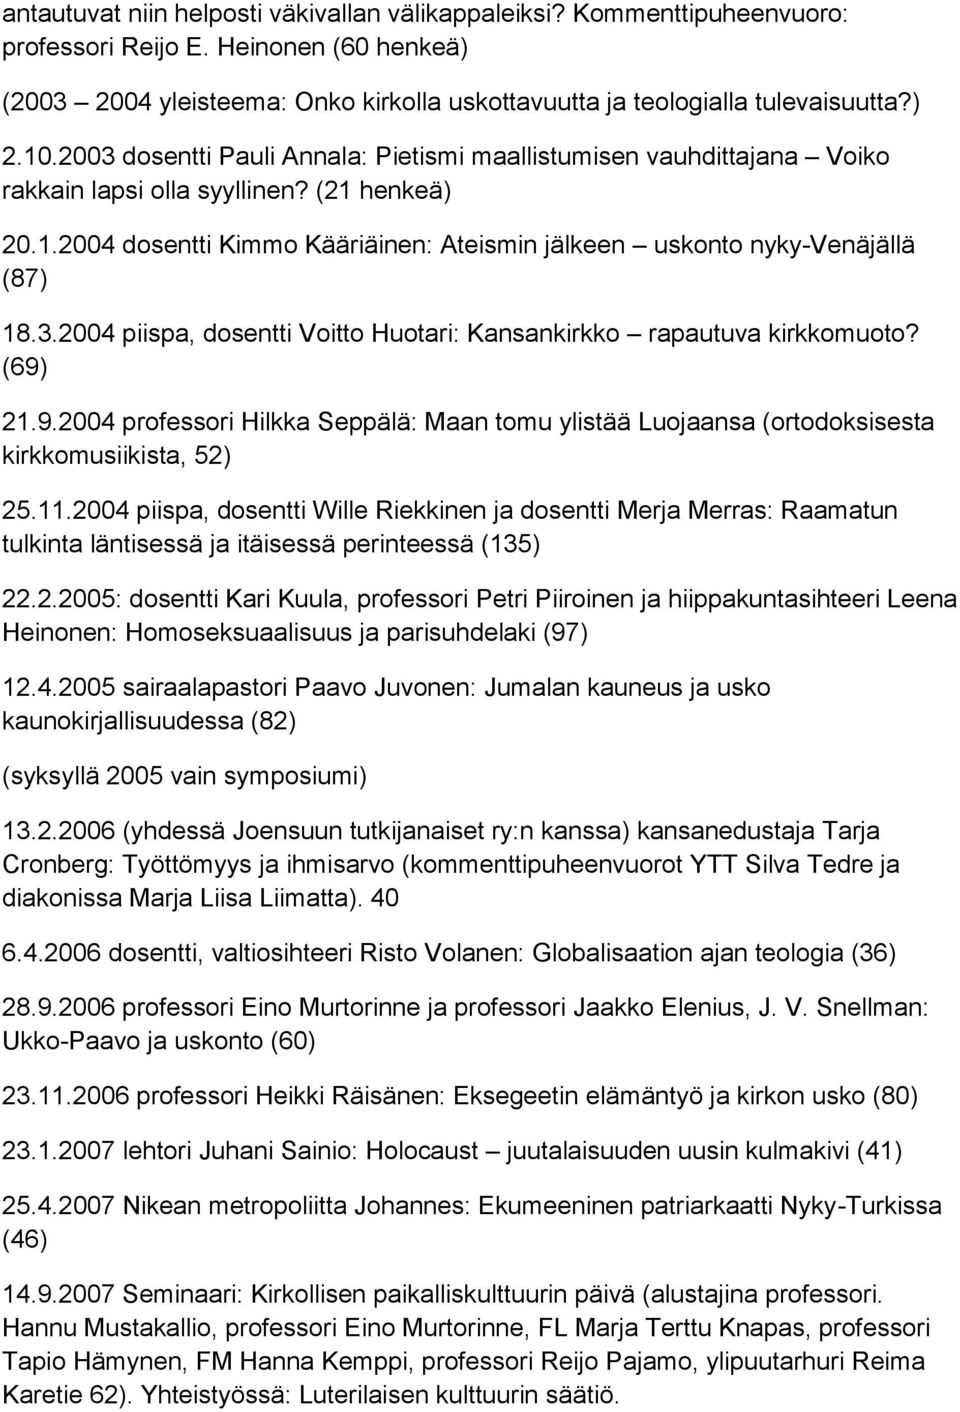 3.2004 piispa, dosentti Voitto Huotari: Kansankirkko rapautuva kirkkomuoto? (69) 21.9.2004 professori Hilkka Seppälä: Maan tomu ylistää Luojaansa (ortodoksisesta kirkkomusiikista, 52) 25.11.